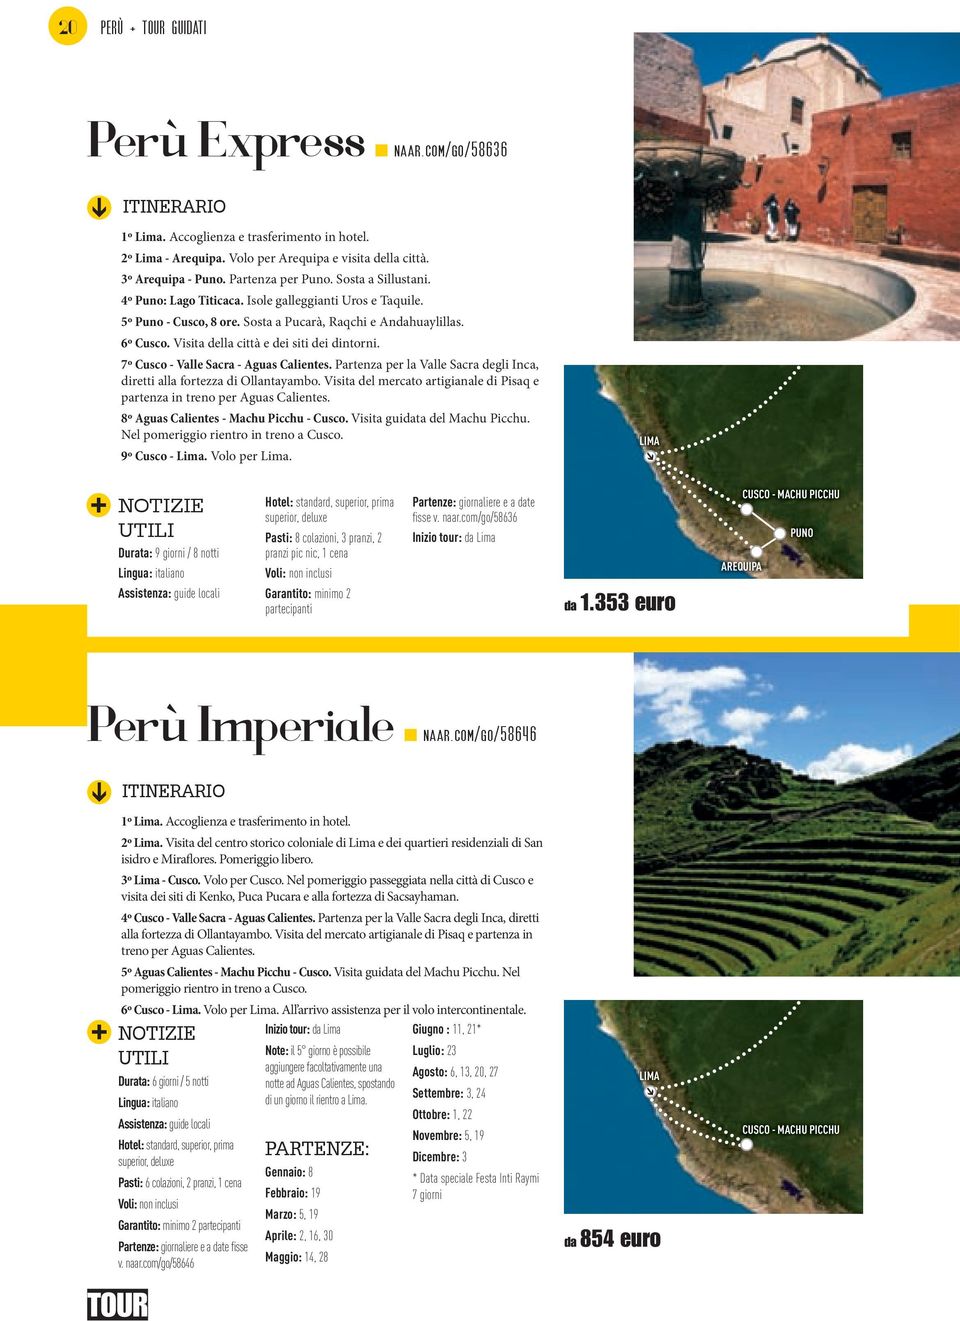 7º Cusco - Valle Sacra - Aguas Calientes. Partenza per la Valle Sacra degli Inca, diretti alla fortezza di Ollantayambo.